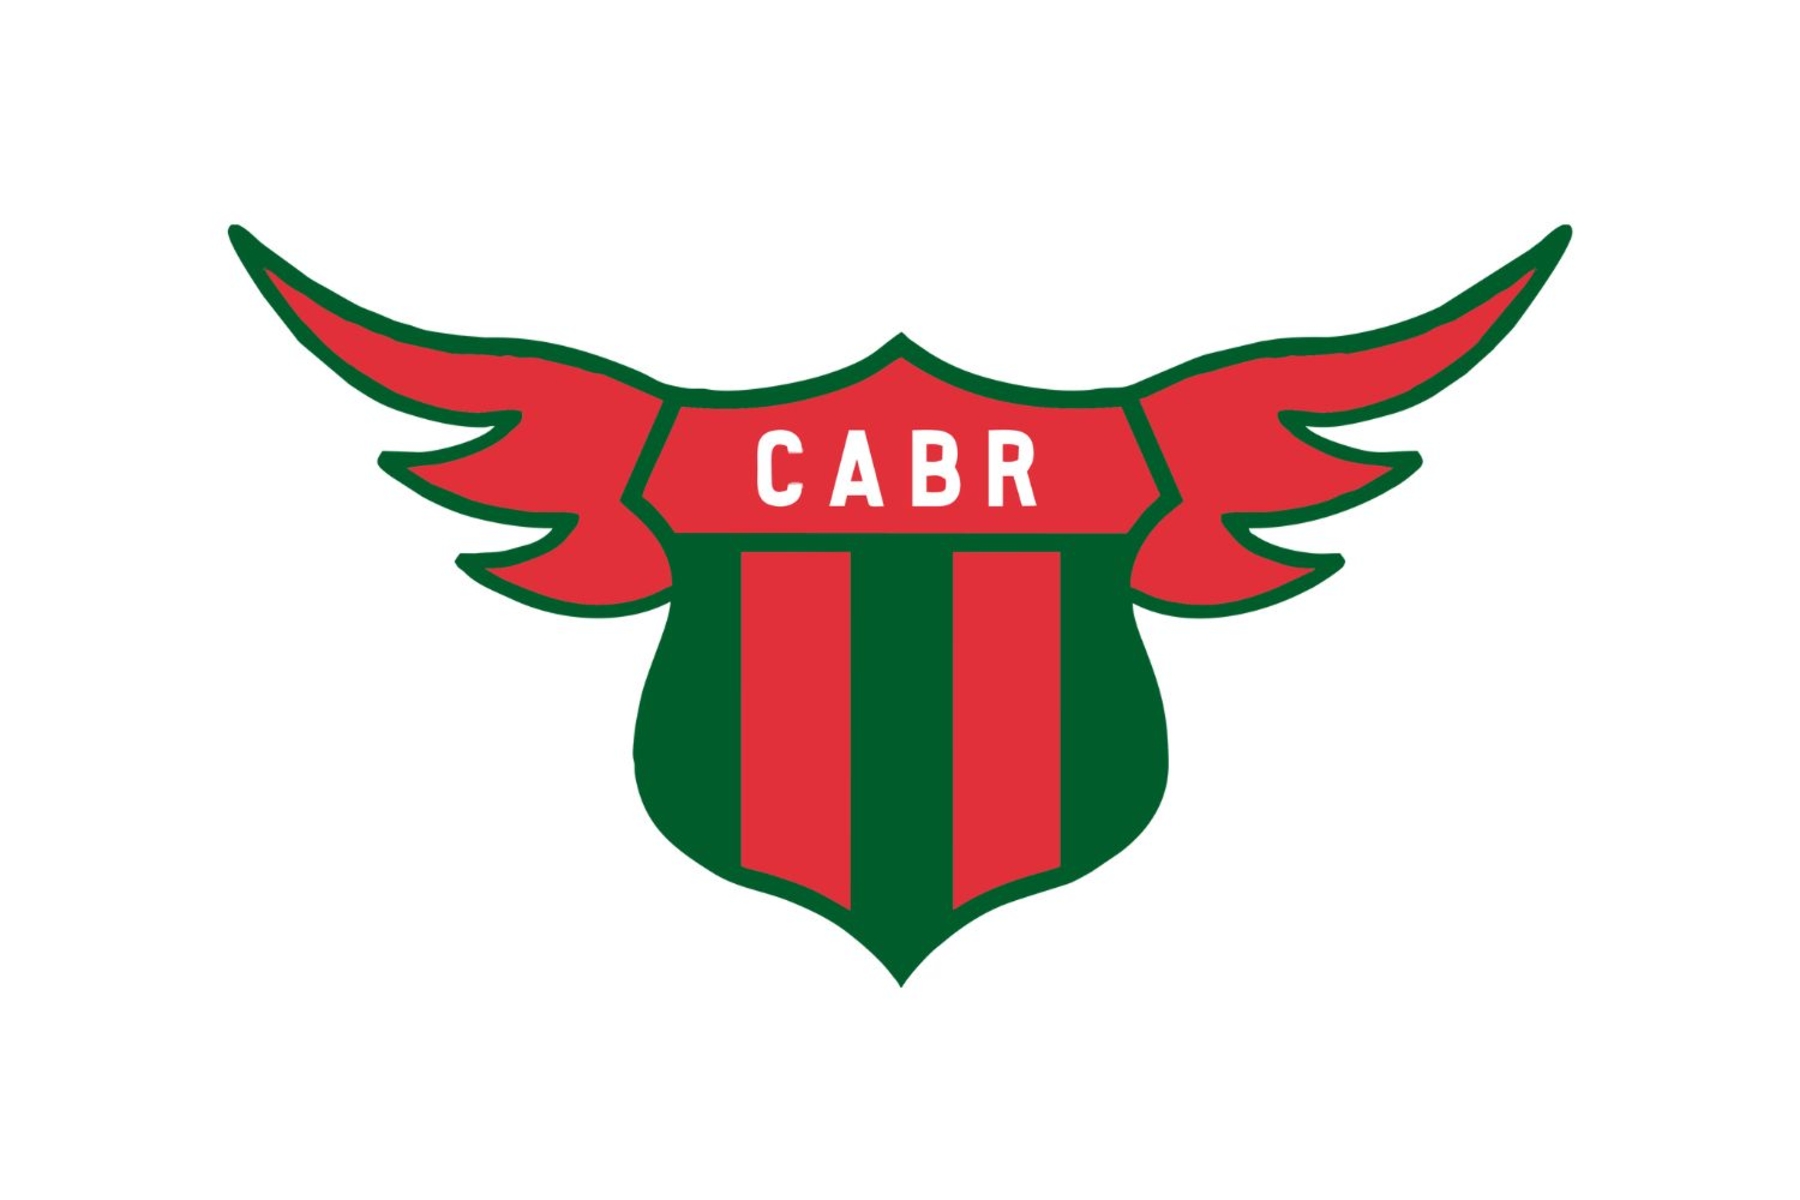 Racing Club of Montevideo, Uruguay crest.